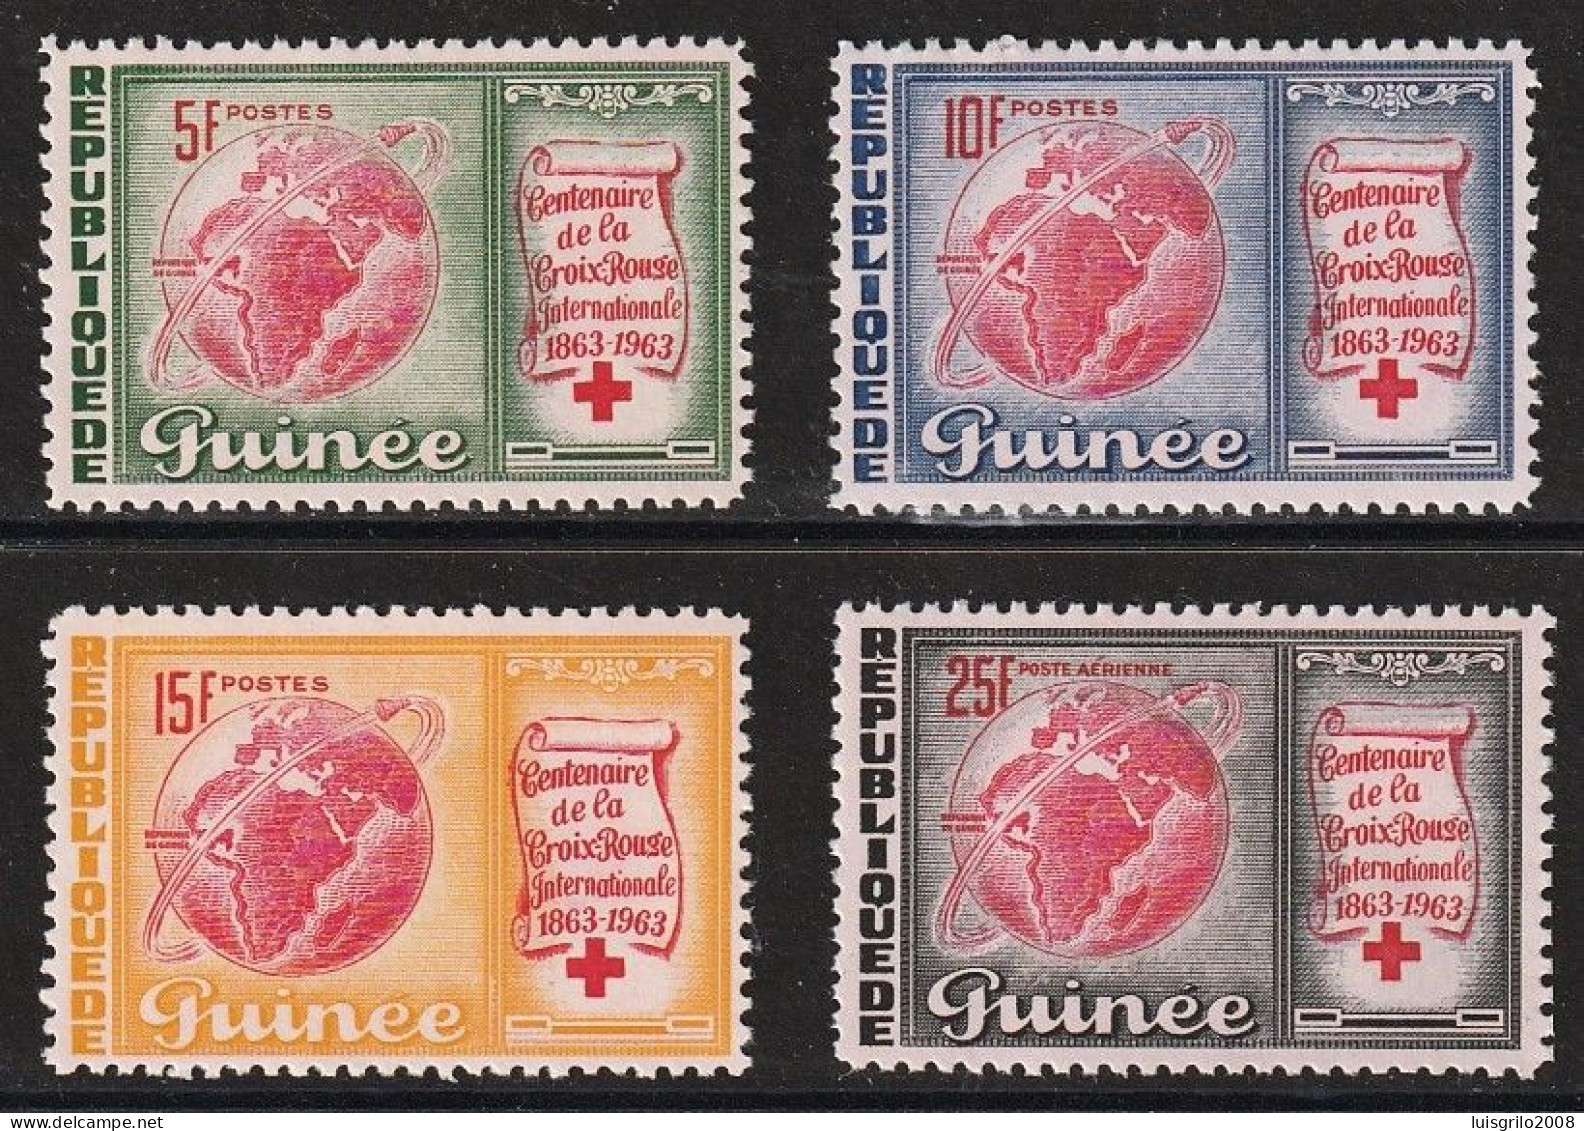 Republique De Guinee 1963 - Red Cross/ Centenaire De La Croix-Rouge -|- Série Compléte - MNH - Croce Rossa